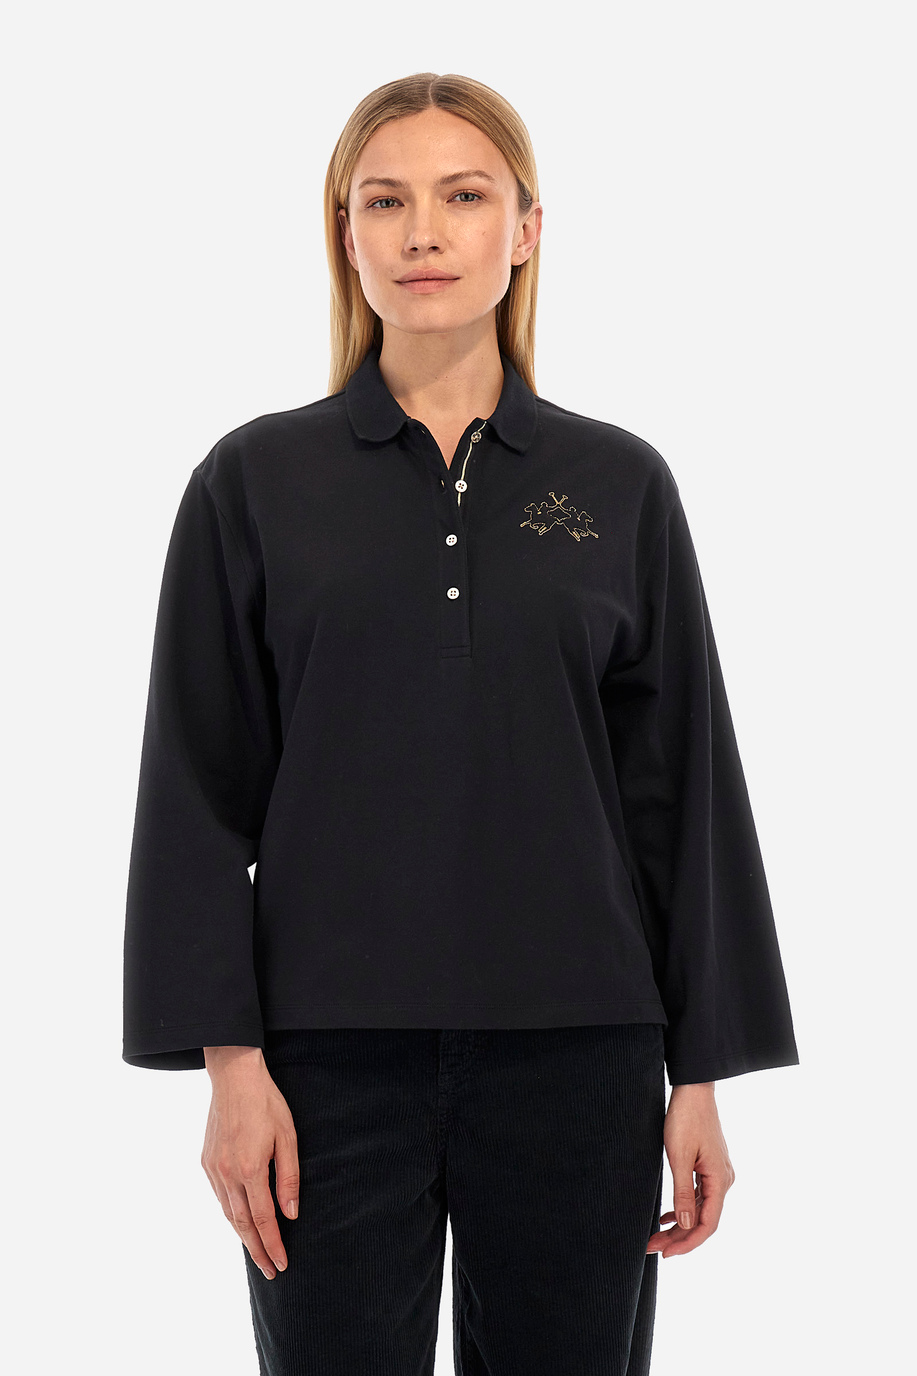 Damen -Poloshirt regular fit - Welch - Business Looks Frauen | La Martina - Official Online Shop